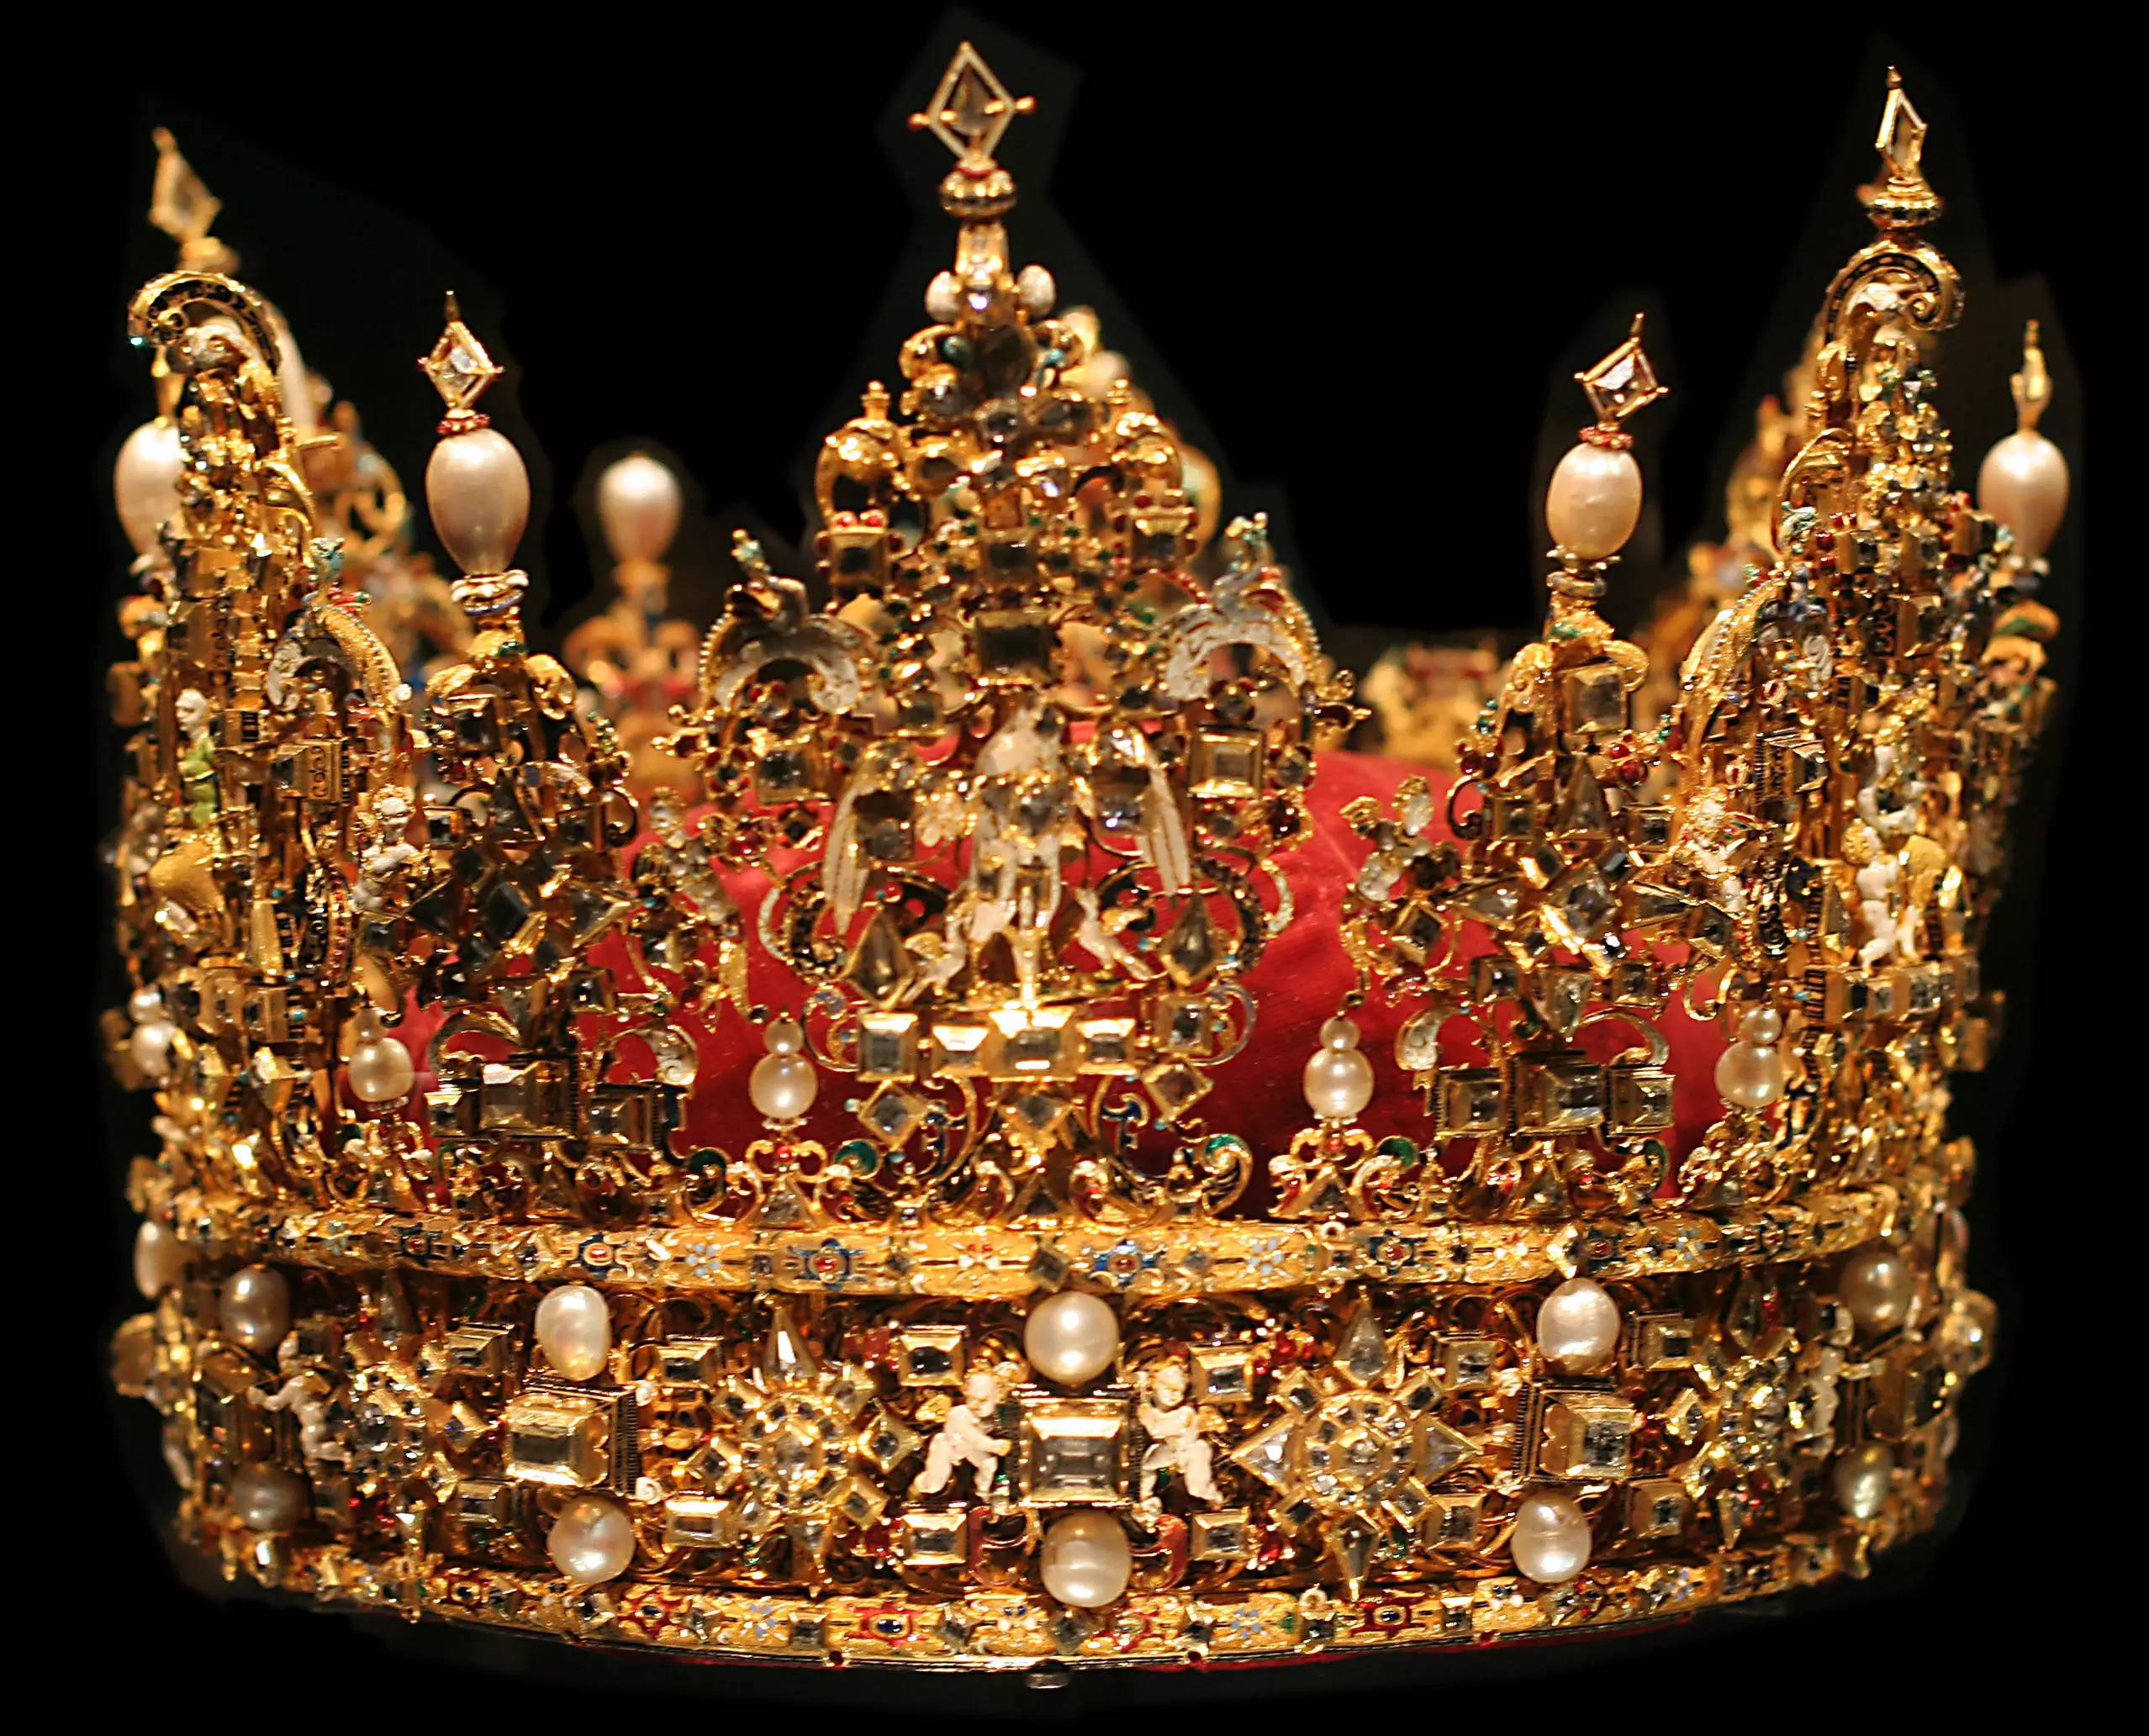 欧洲珍珠王冠图片